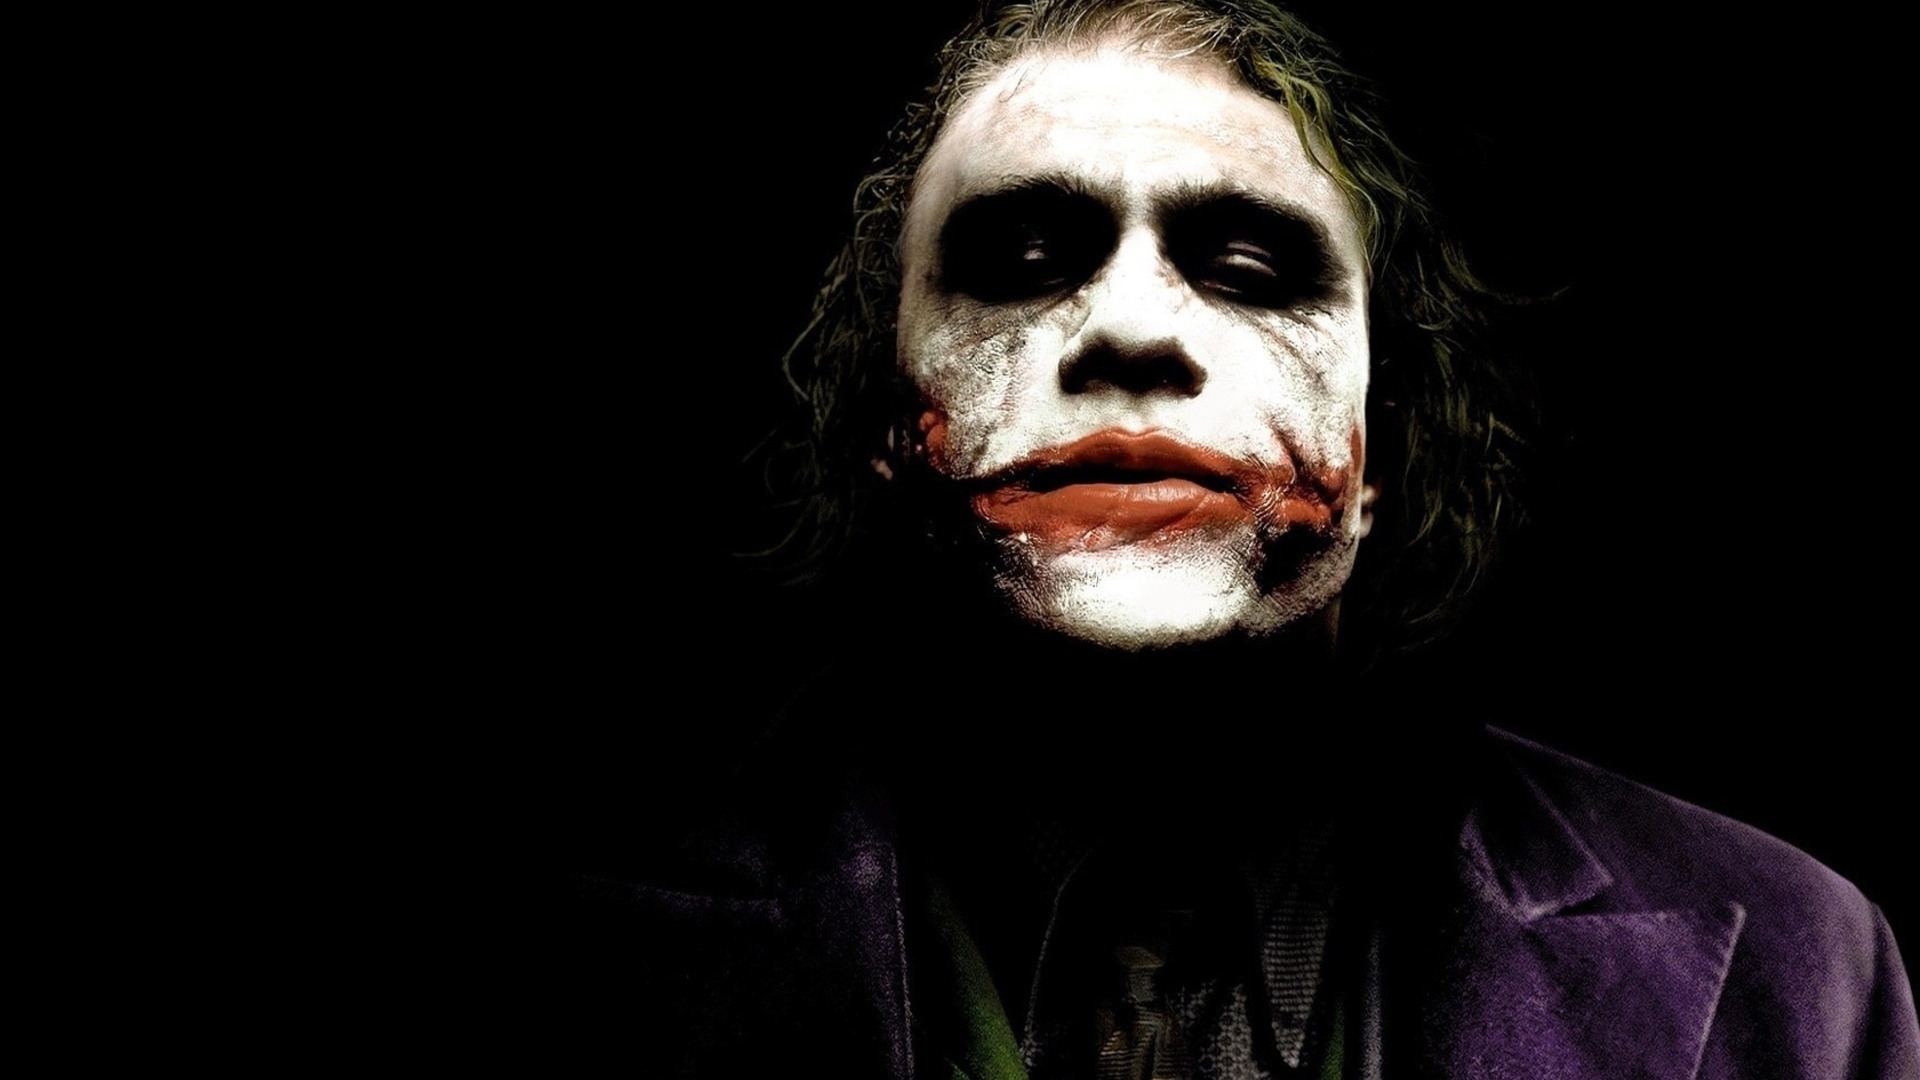 Heath Ledger The Joker for 1920 x 1080 HDTV 1080p resolution